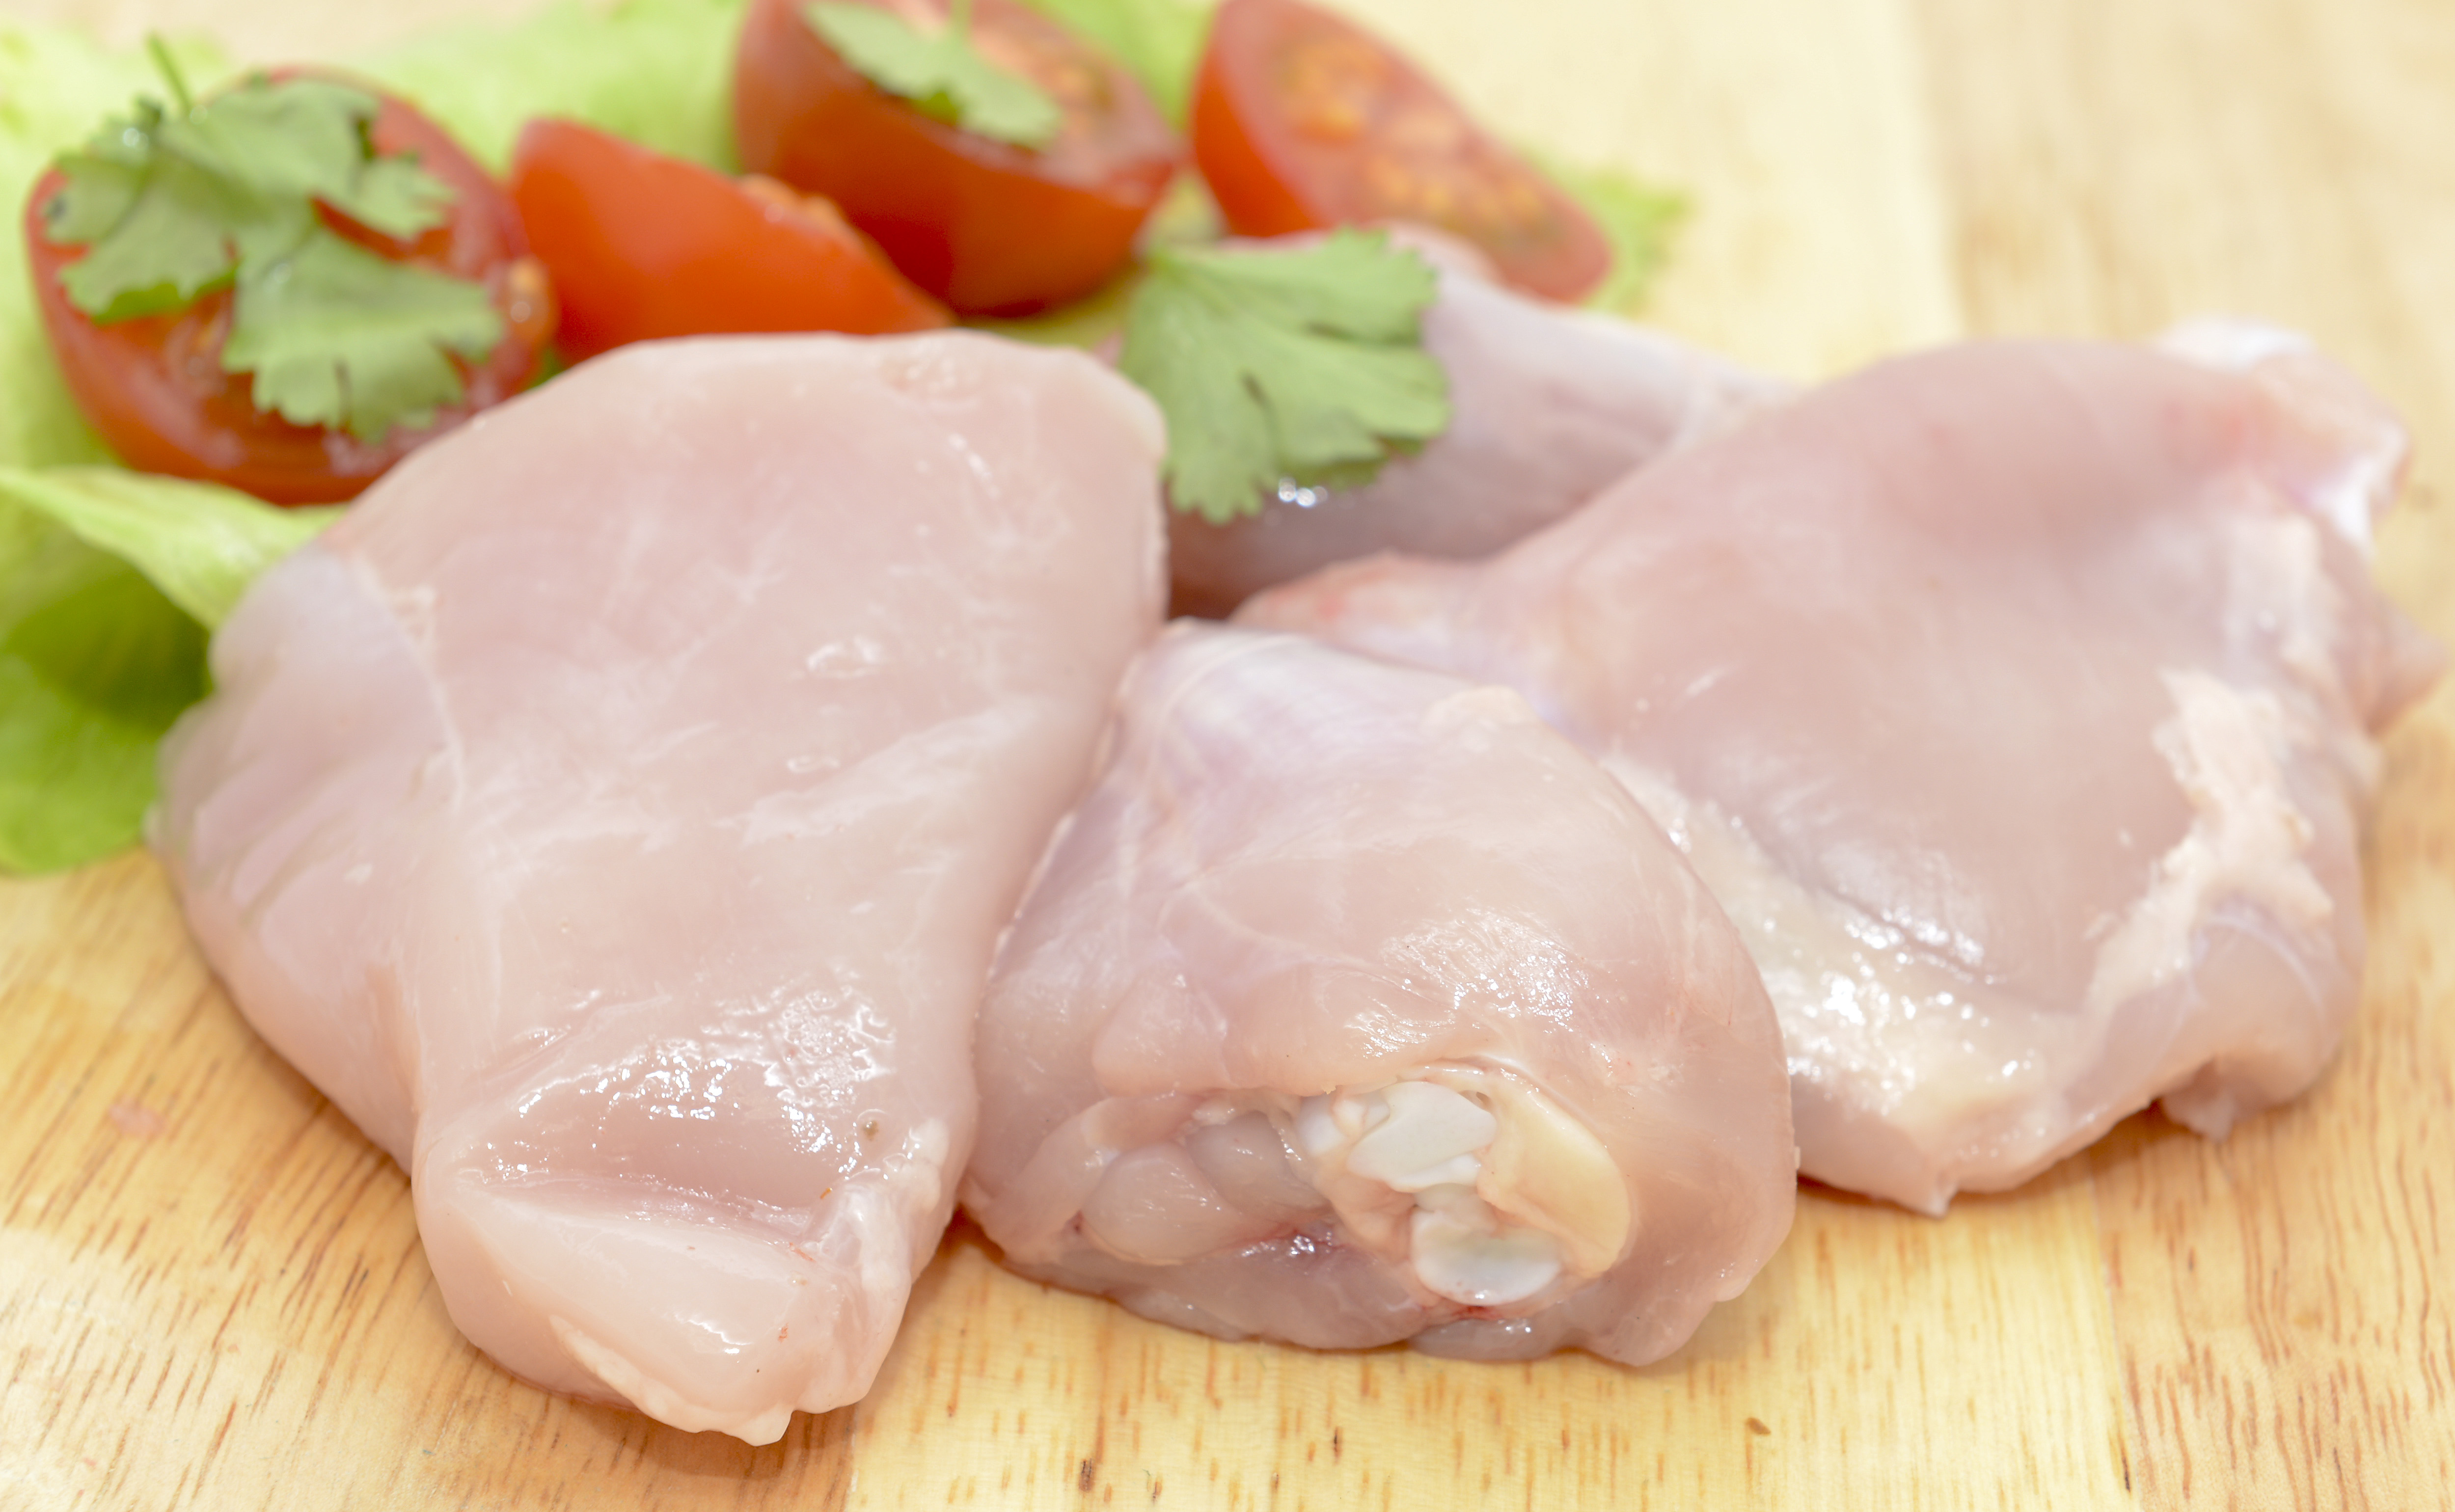 از مصرف گوشت مرغ غافل نباشید